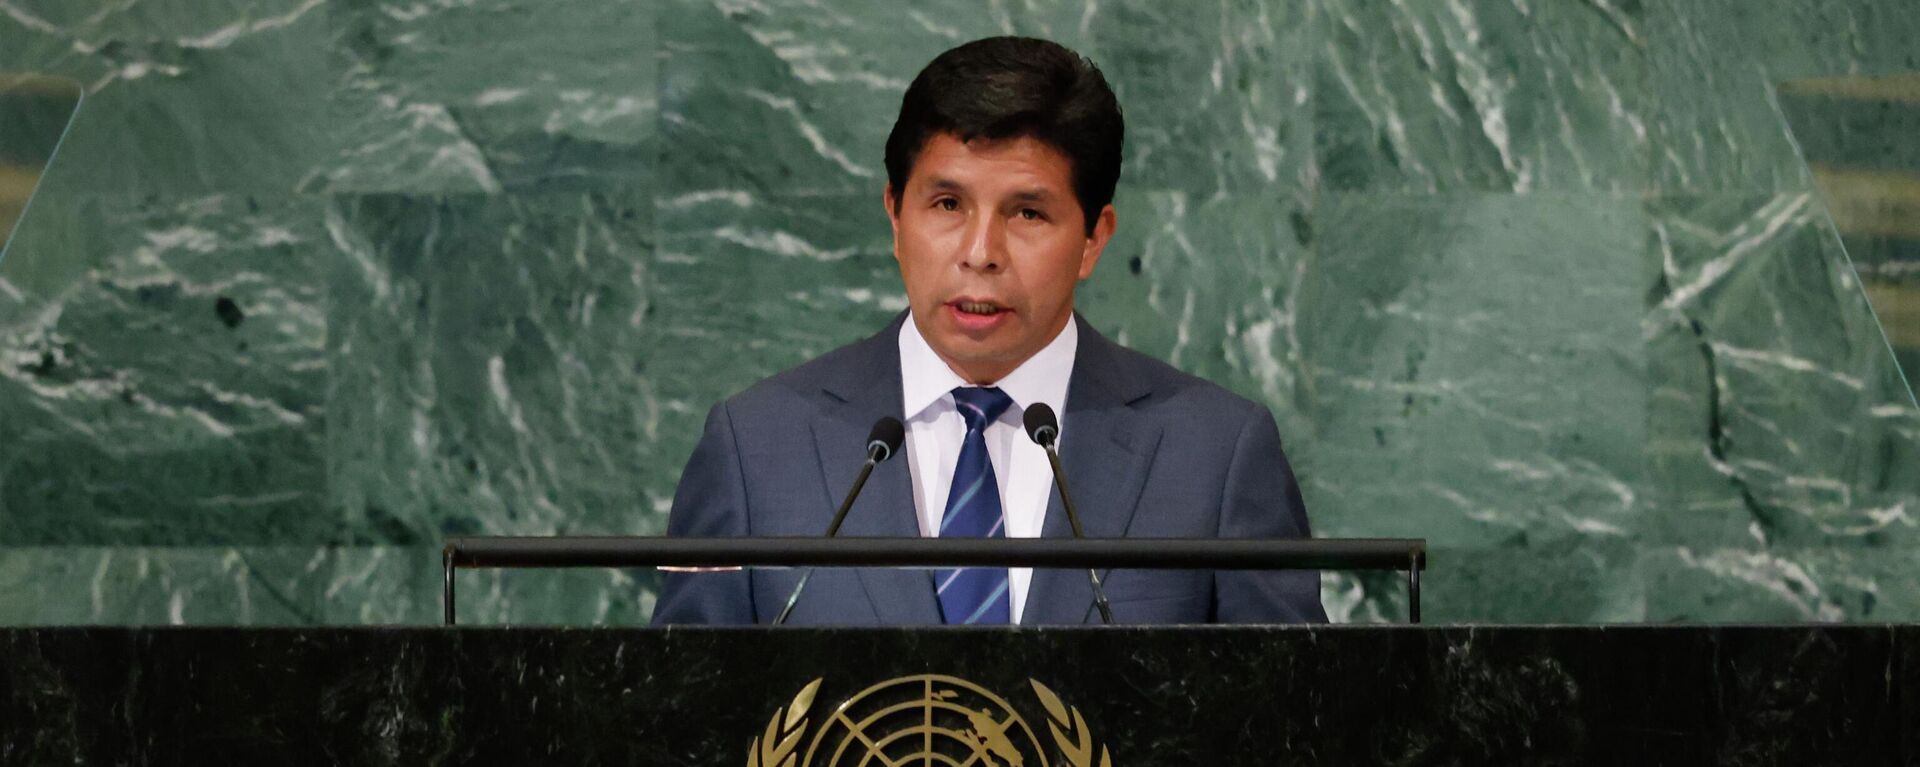 O presidente do Peru, Pedro Castillo, discursa na Assembleia Geral das Nações Unidas, em 20 de setembro de 2022 - Sputnik Brasil, 1920, 20.09.2022